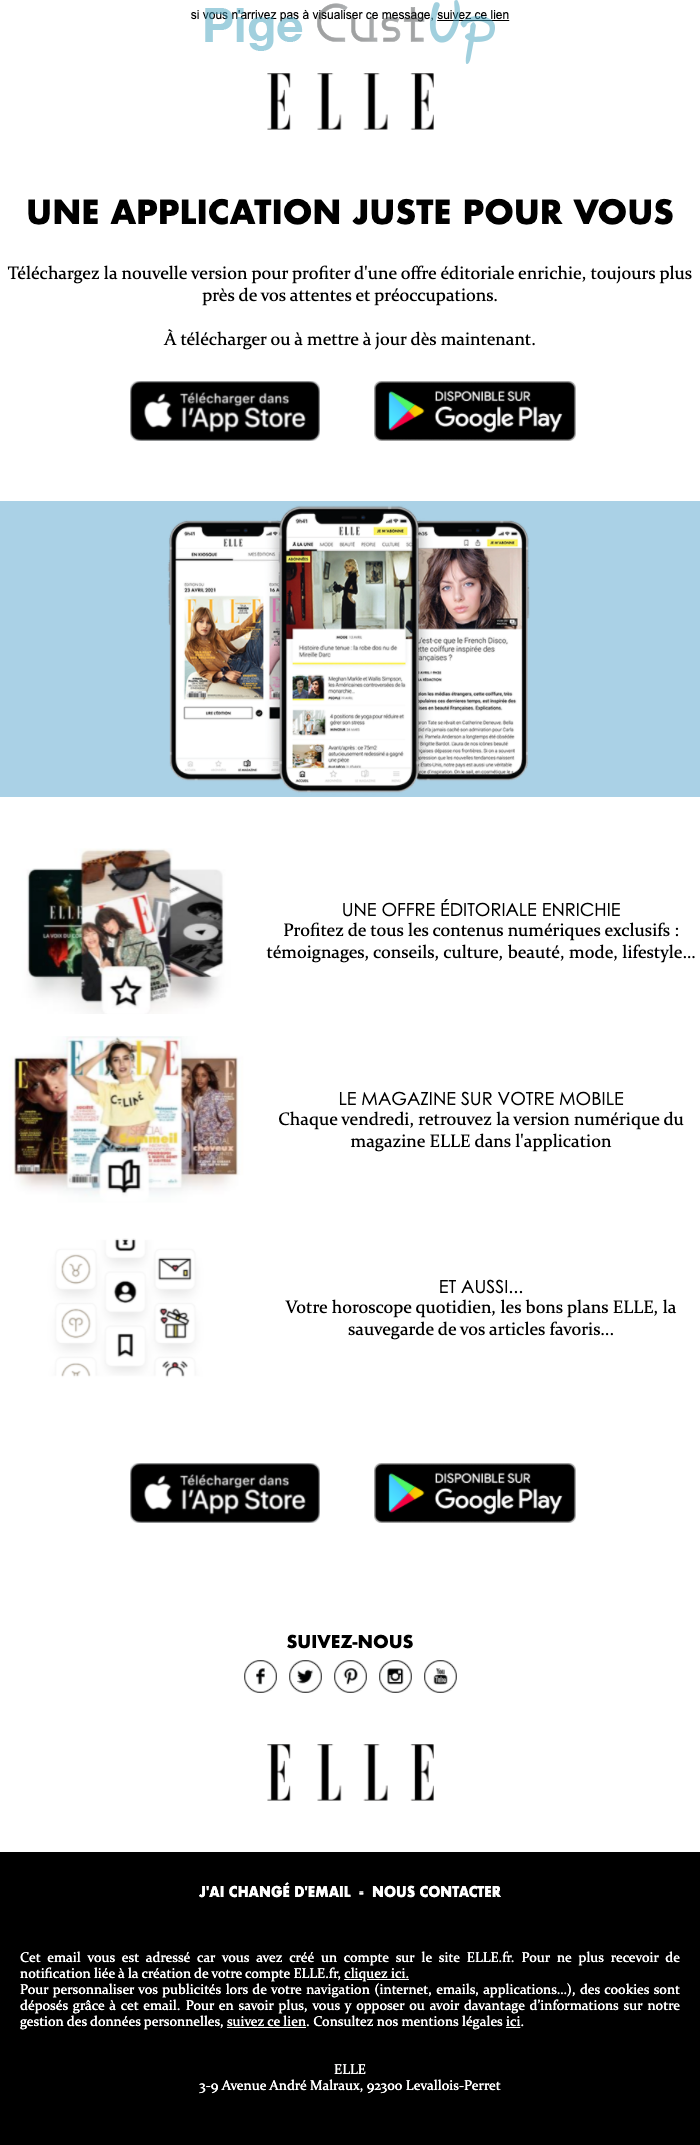 Exemple de Type de media  e-mailing - Elle - Marketing marque - Communication Services - Nouveaux Services